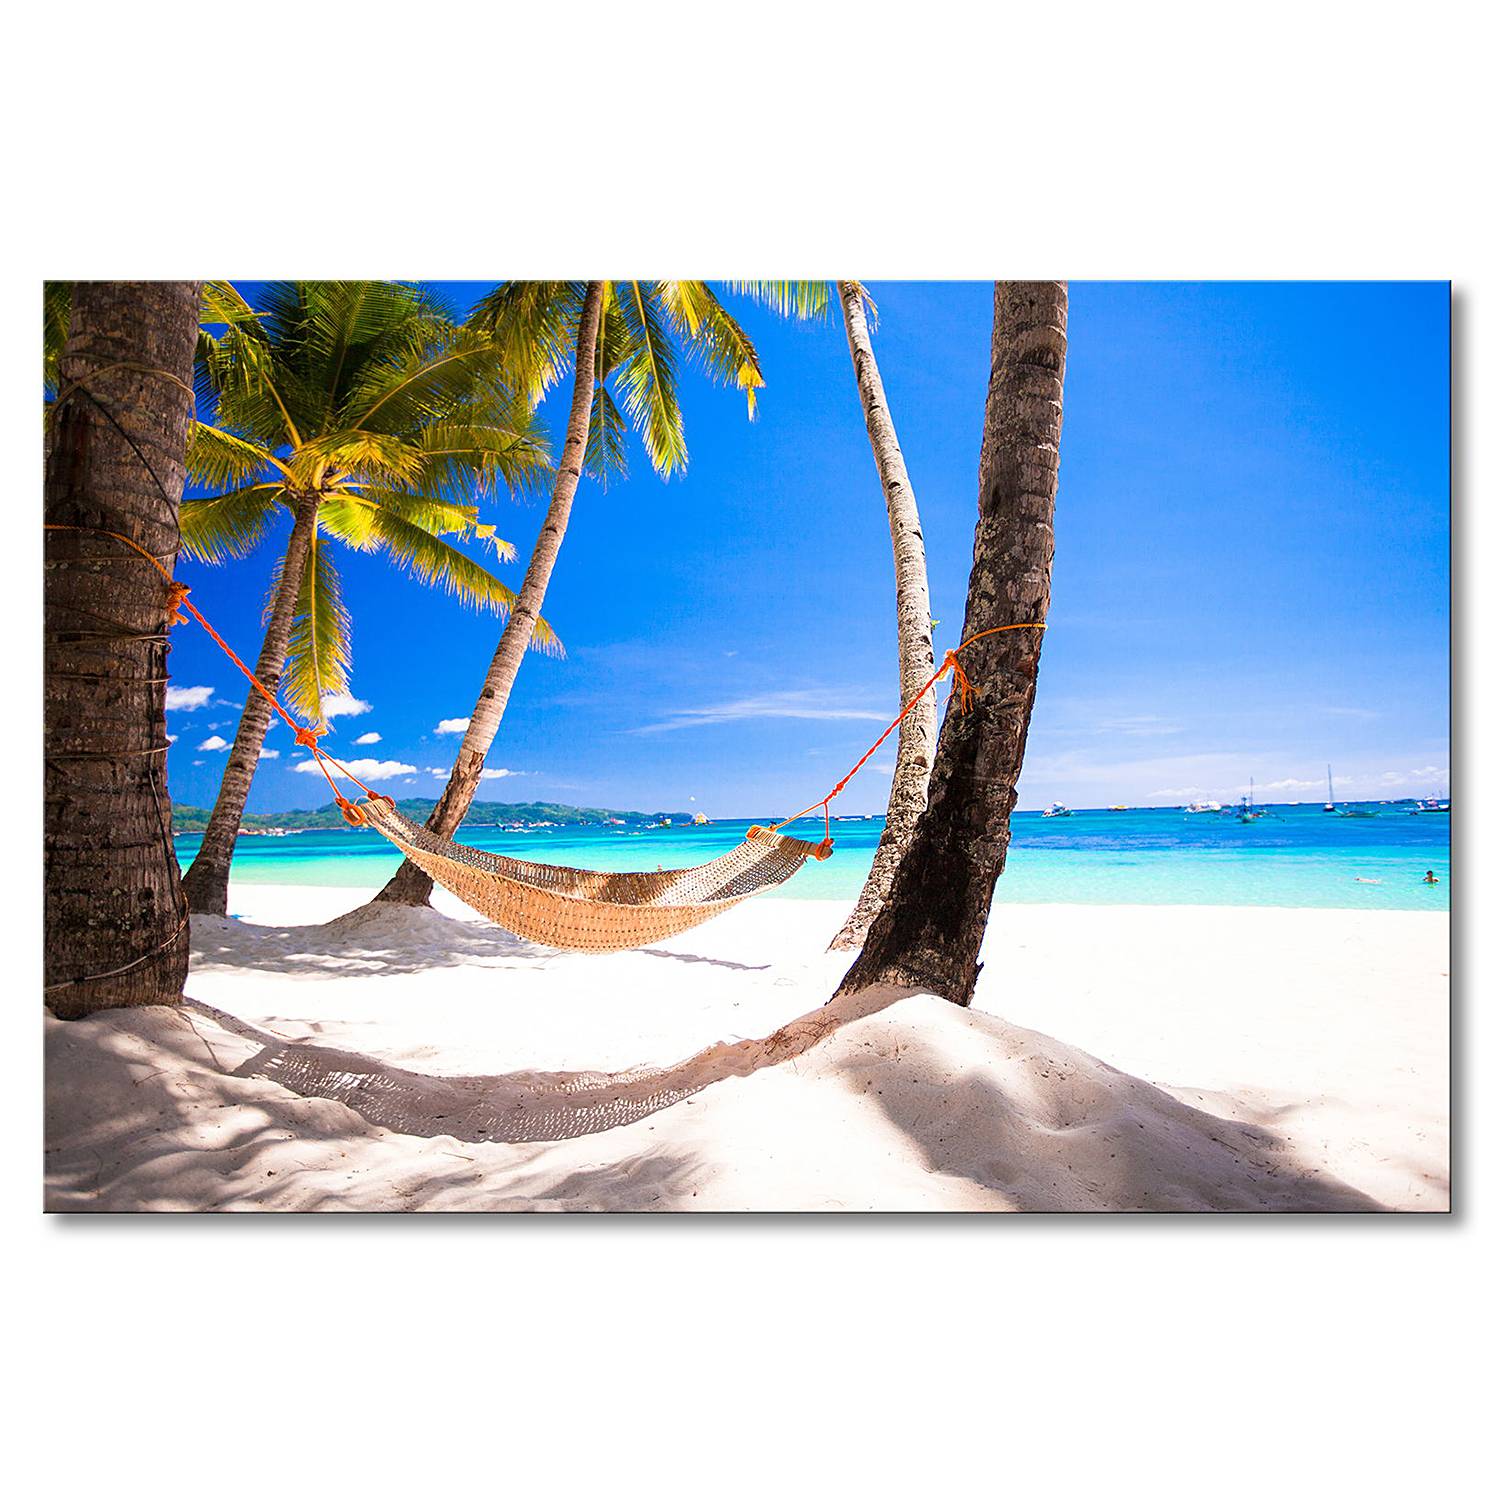 Strandbilder für Urlaubsfeeling online kaufen | home24